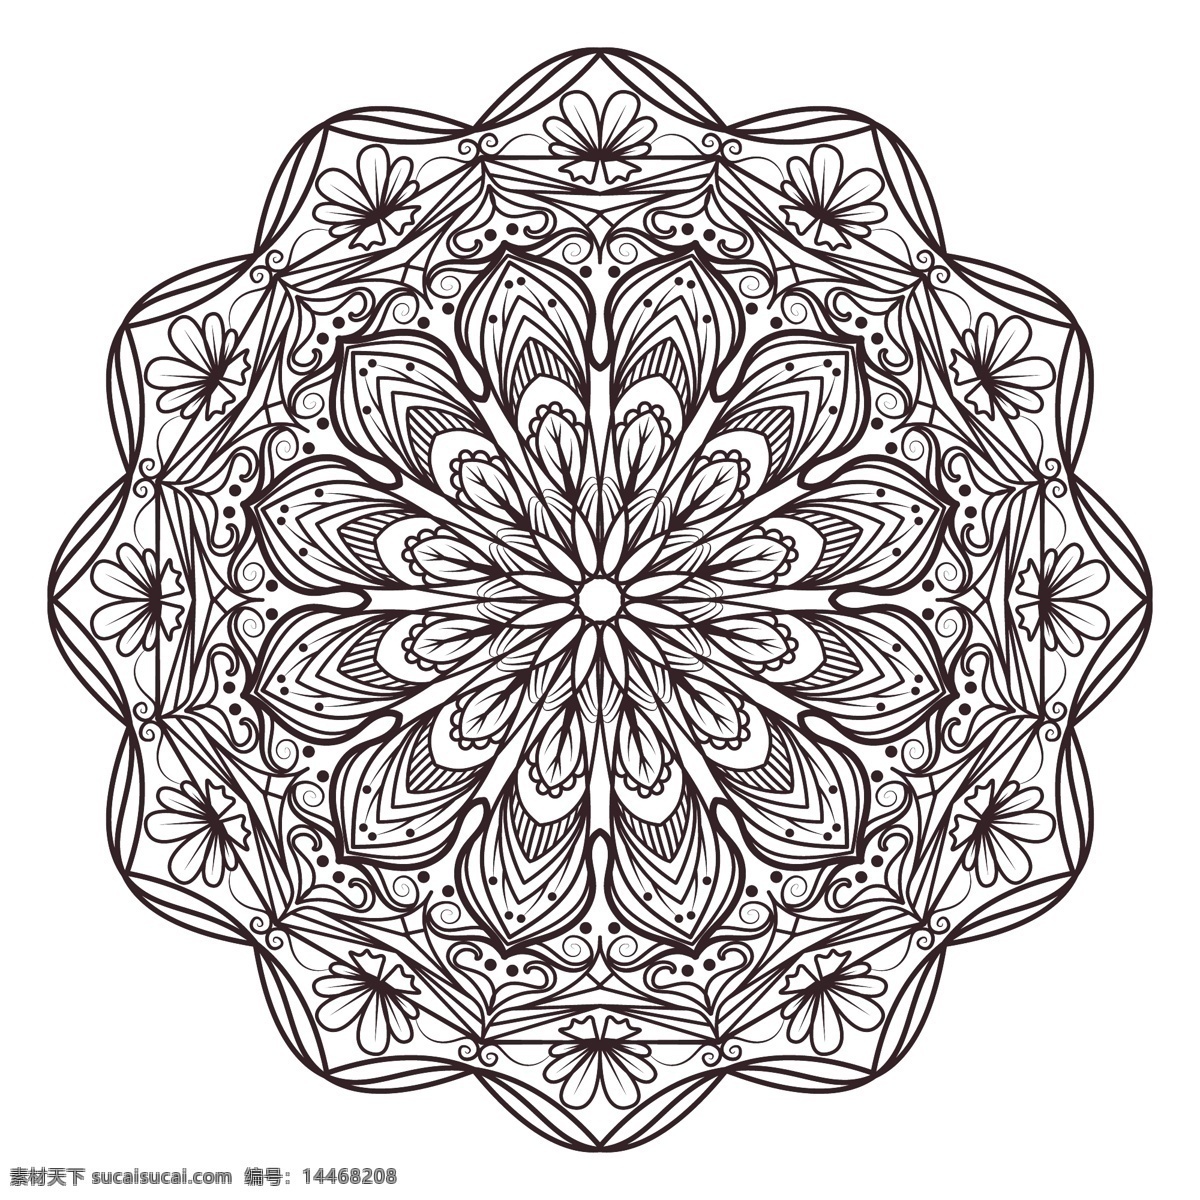 几何 曼荼罗 花卉 抽象 装饰 阿拉伯文 印度 形状 伊斯兰教 花卉装饰 东方 象征 抽象的形状 华丽